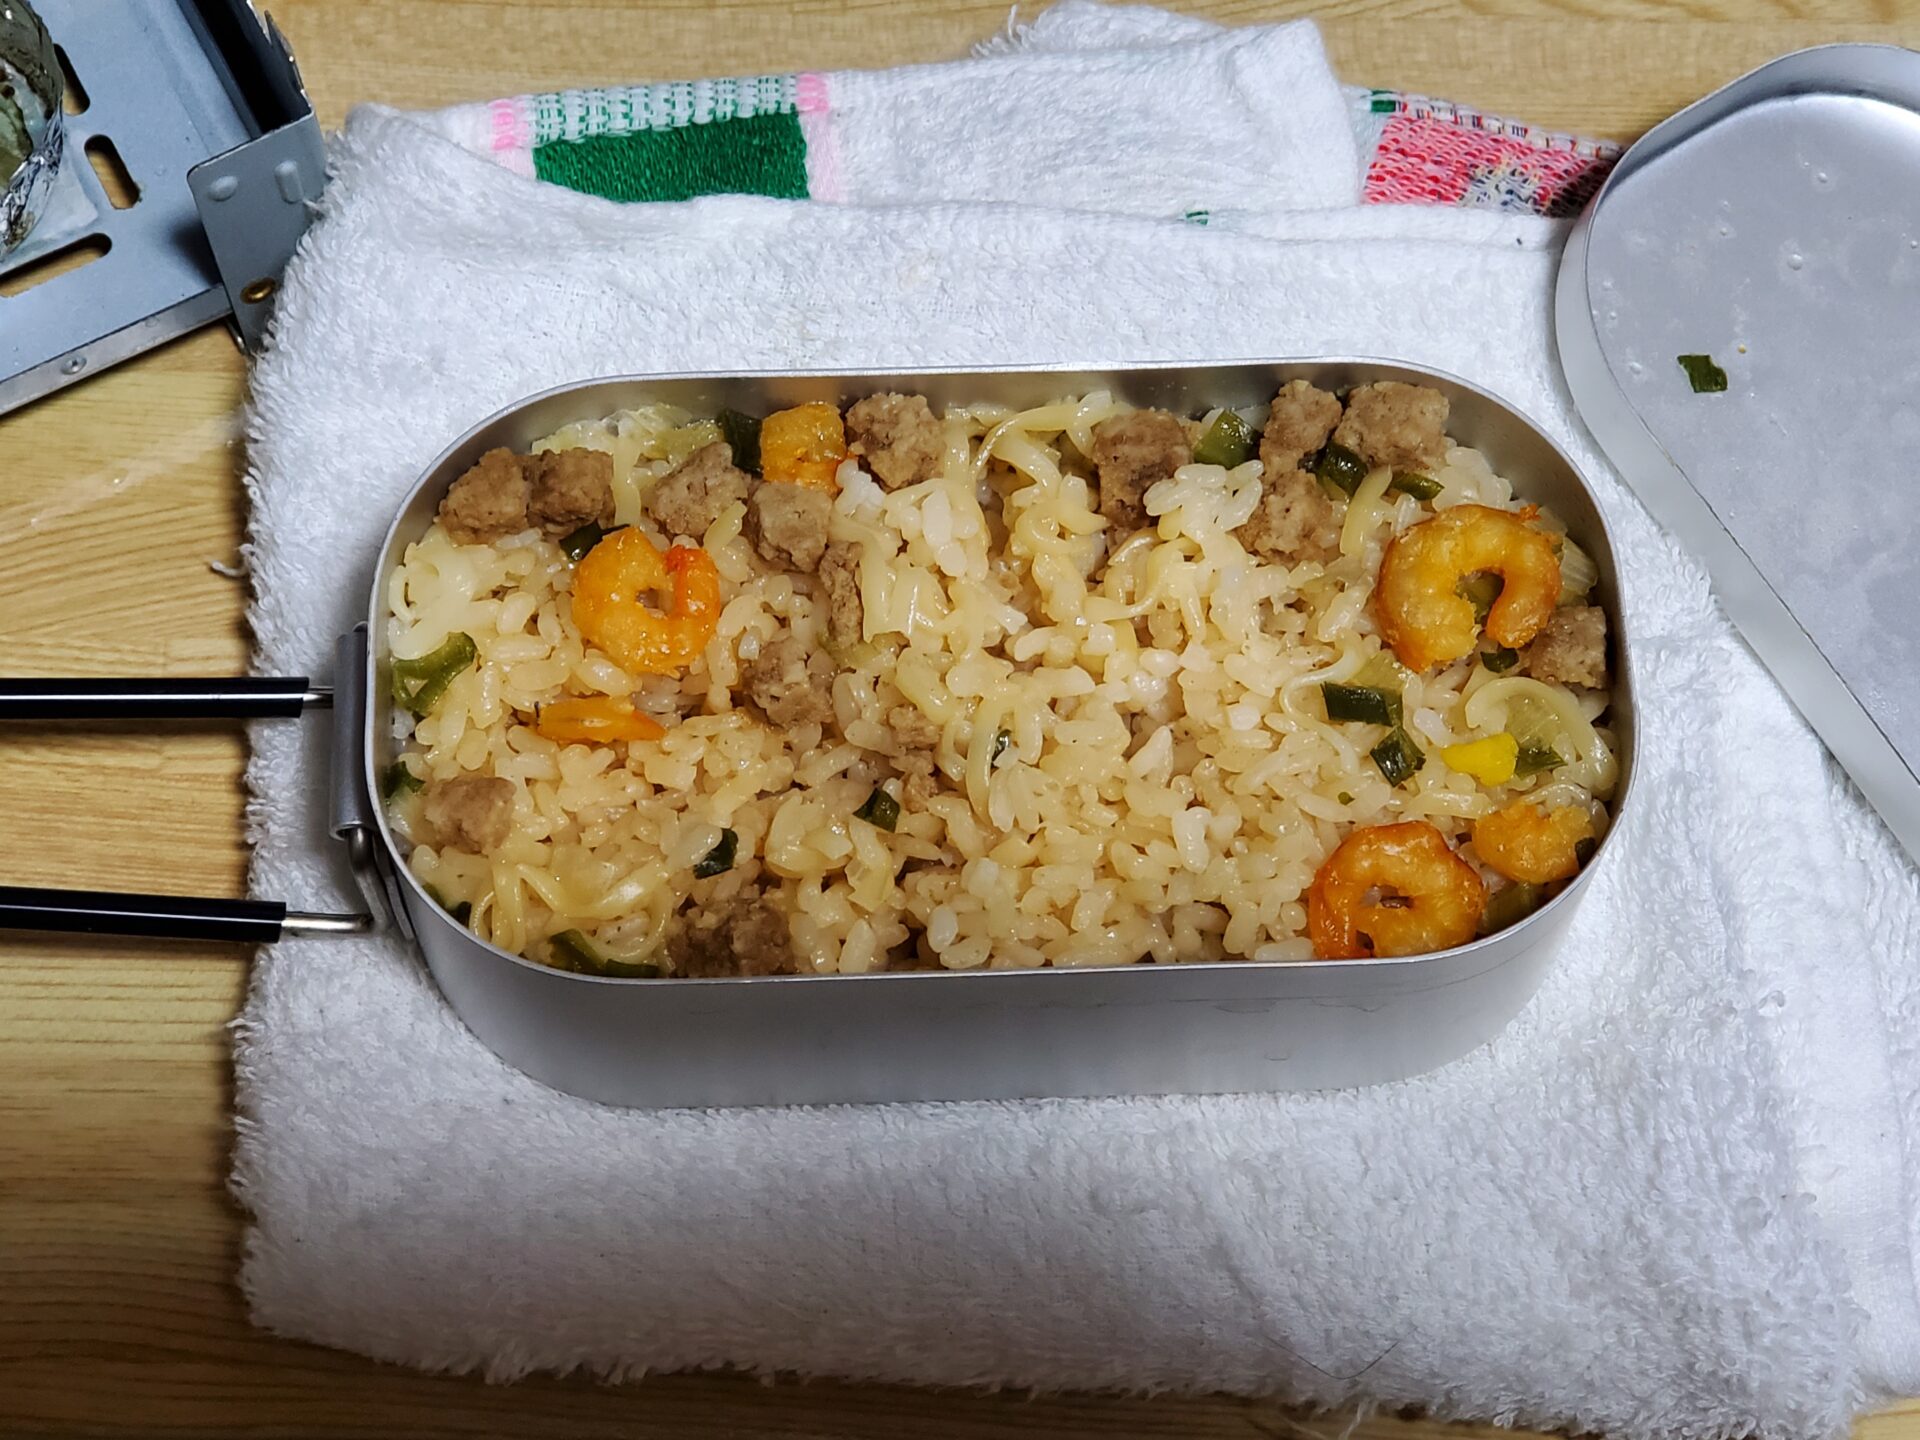 メスティン炊飯 カップヌードルの残り汁でお米を炊く アユミンのブログ